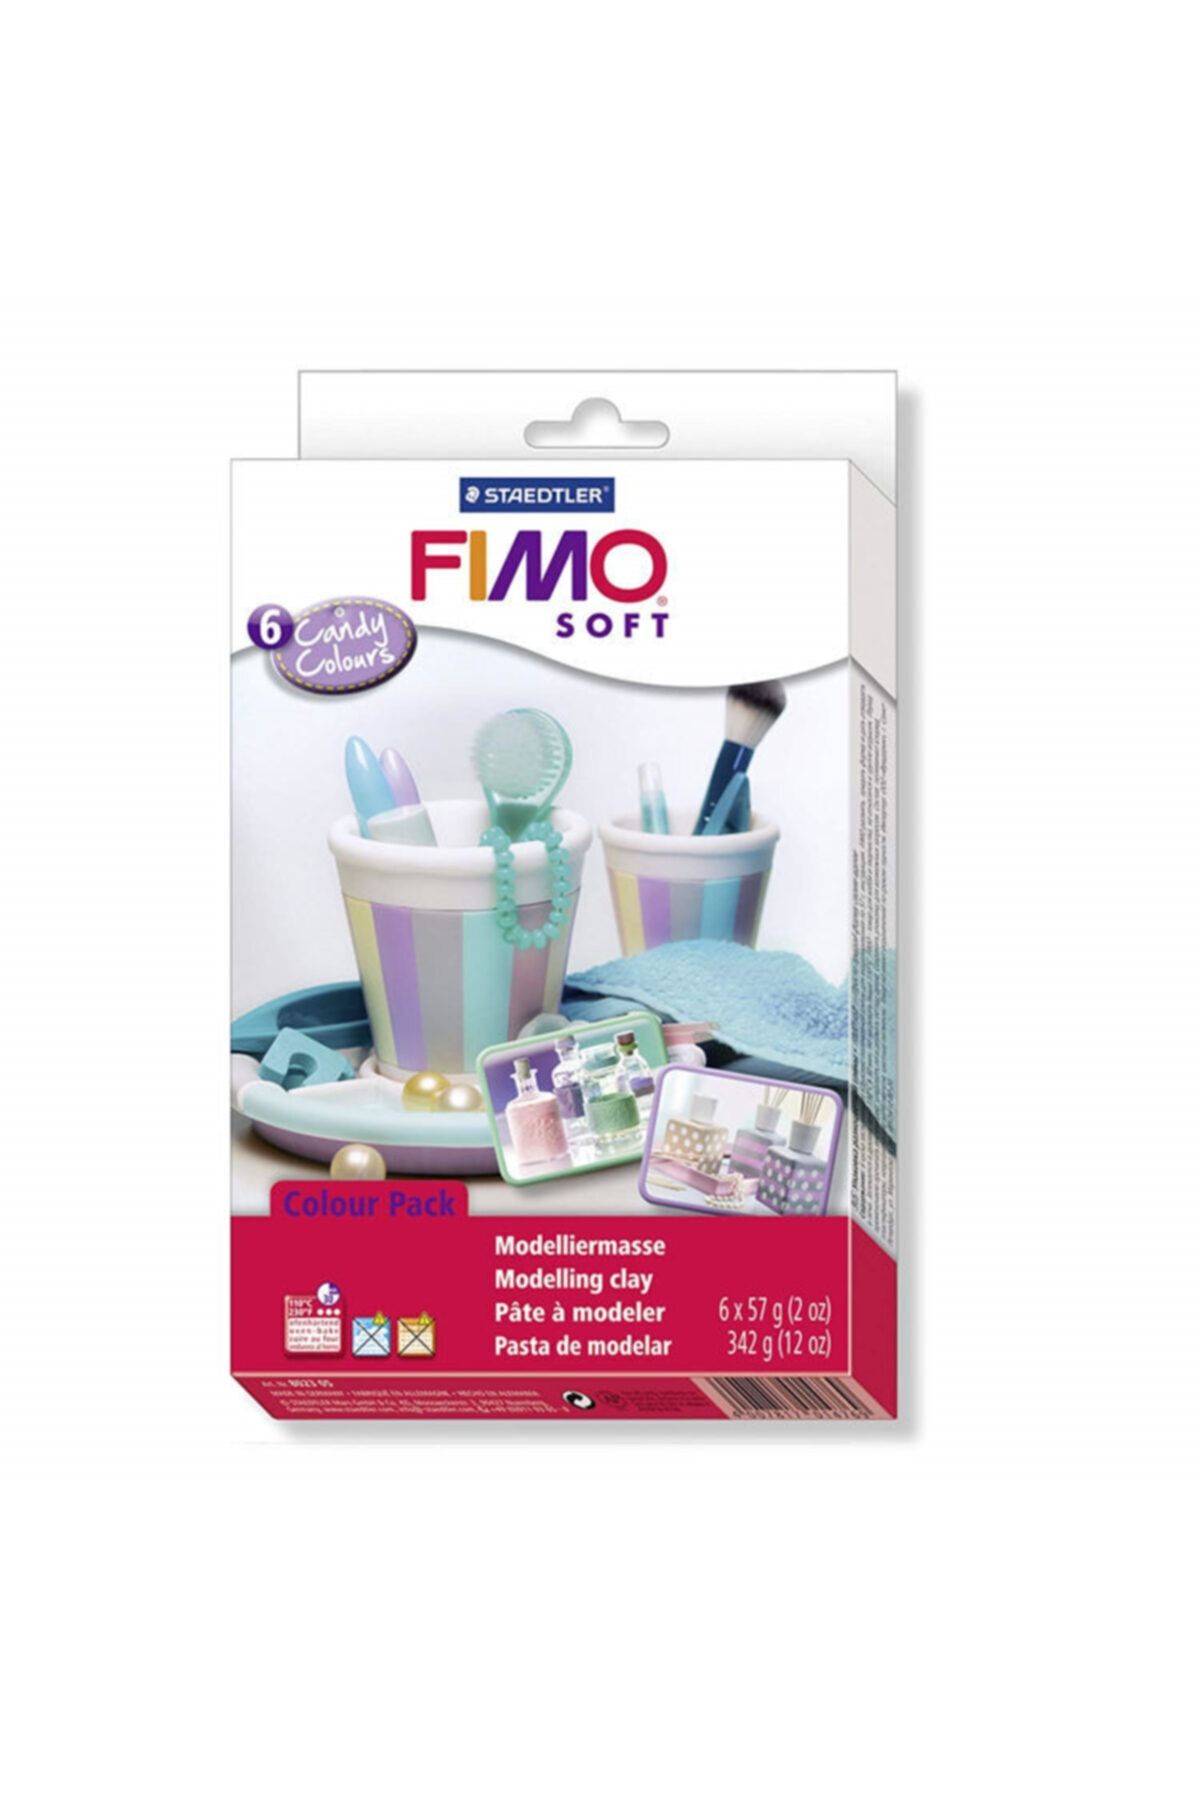 Staedtler Fimo Soft Polimer 6 Renk X 57 gr Candy Colours Kil Seti